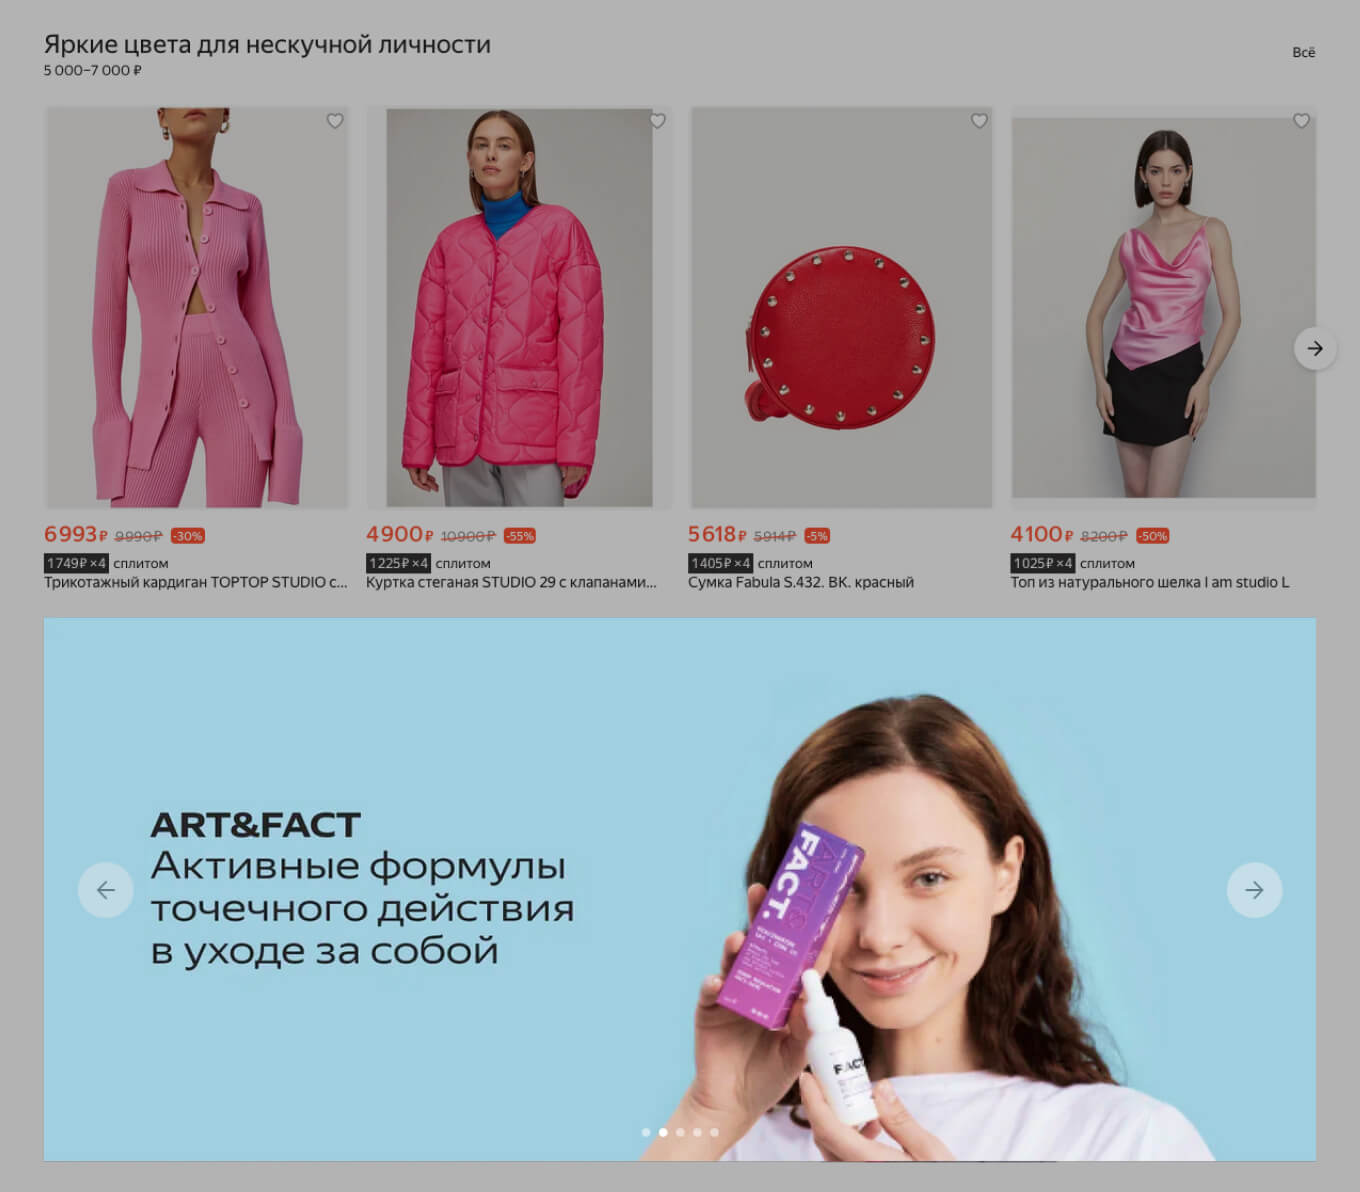 Как отображается рекламный баннер бренда на Яндекс Маркете